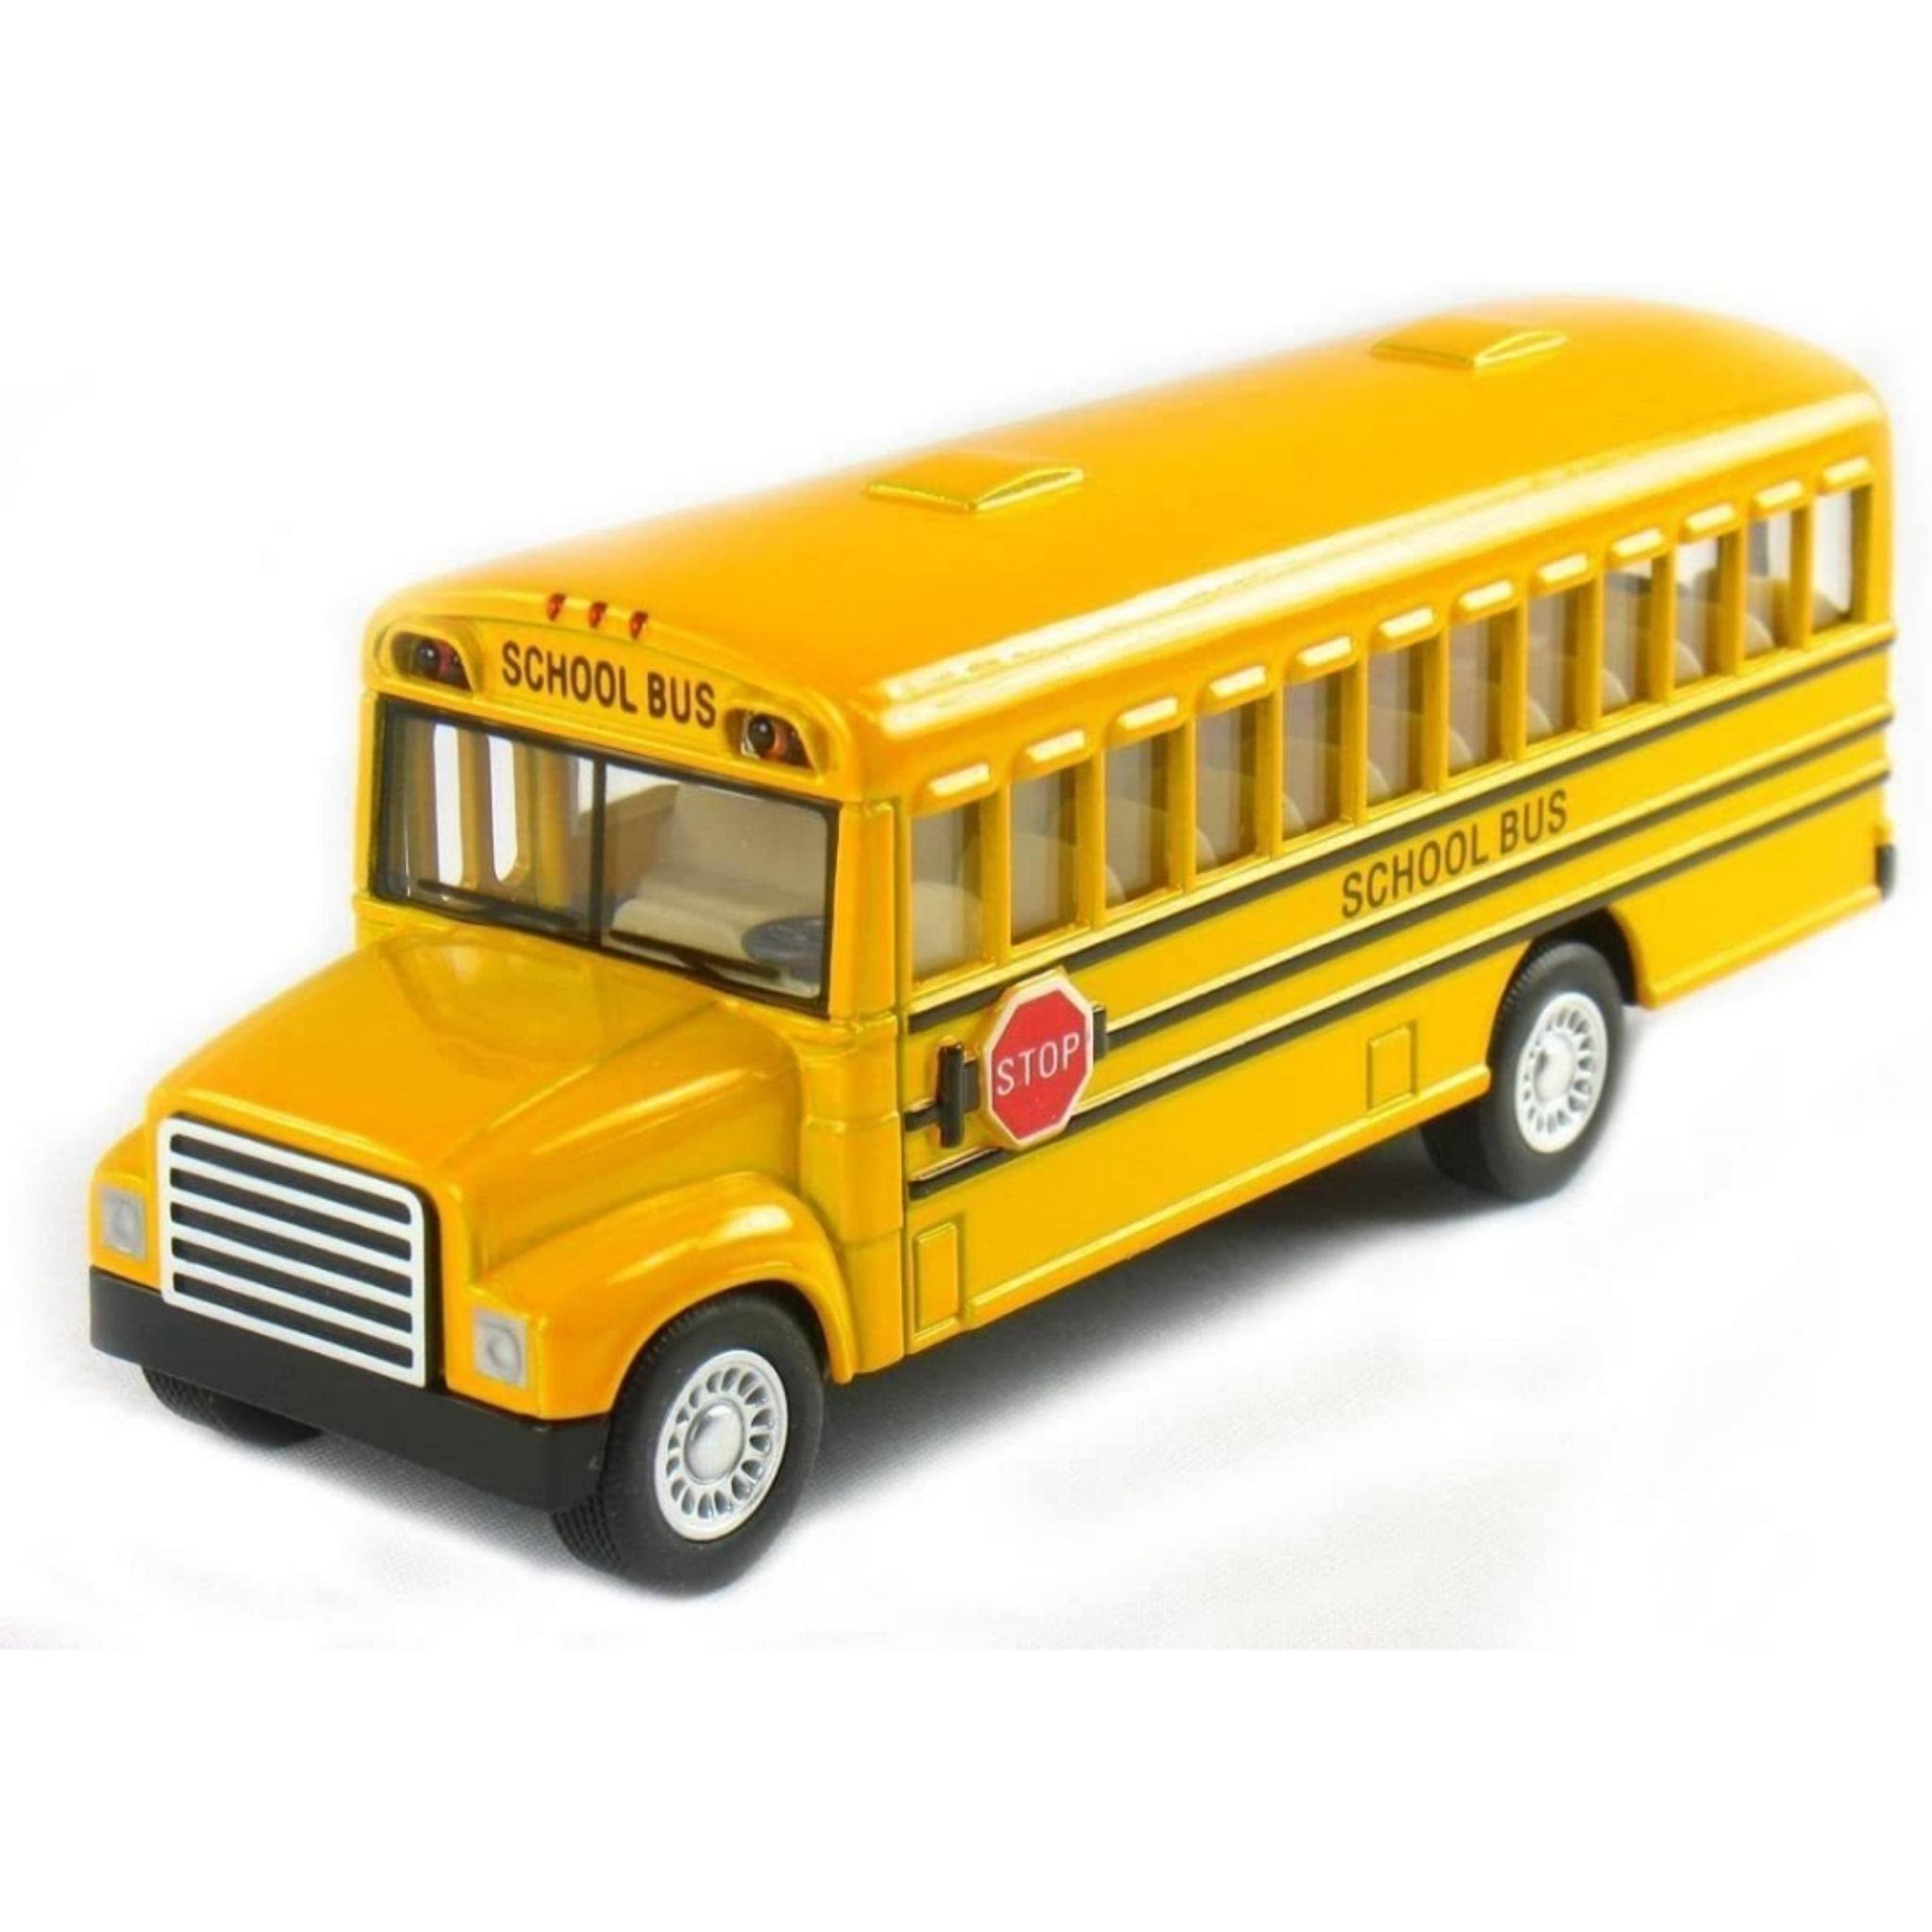 Schylling School Bus Toy